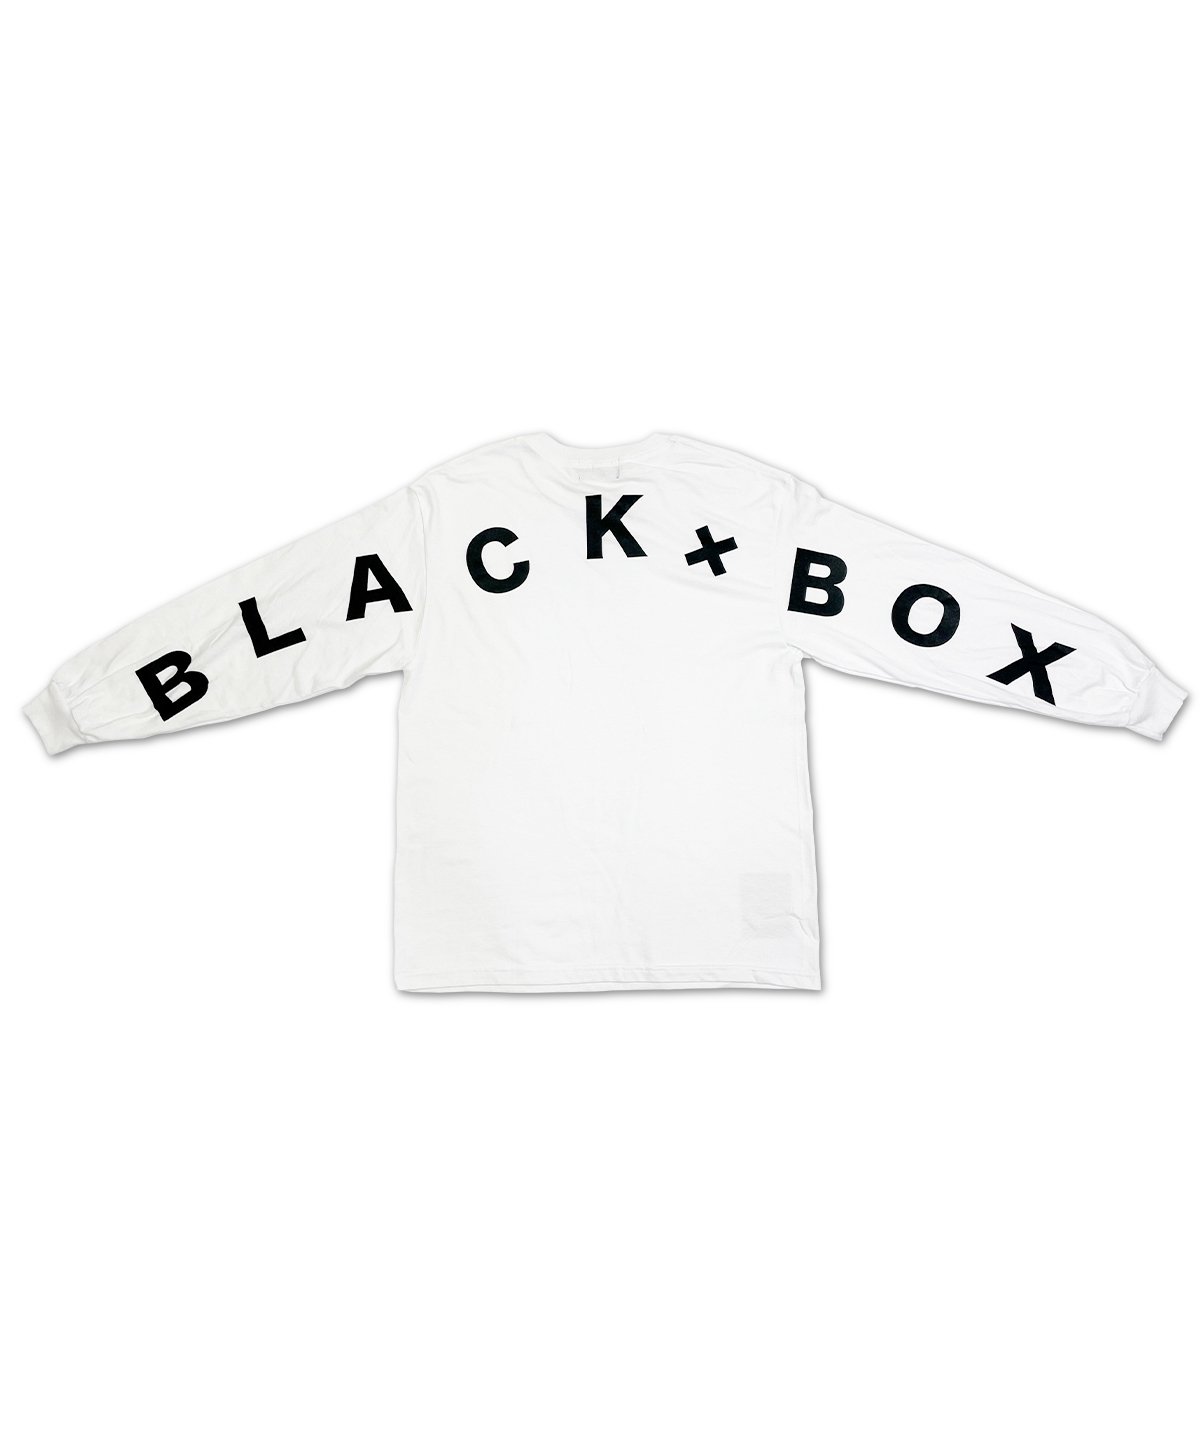 貴重 X-LARGE × BLACK SHEEP コラボ Tシャツ ボックスロゴ